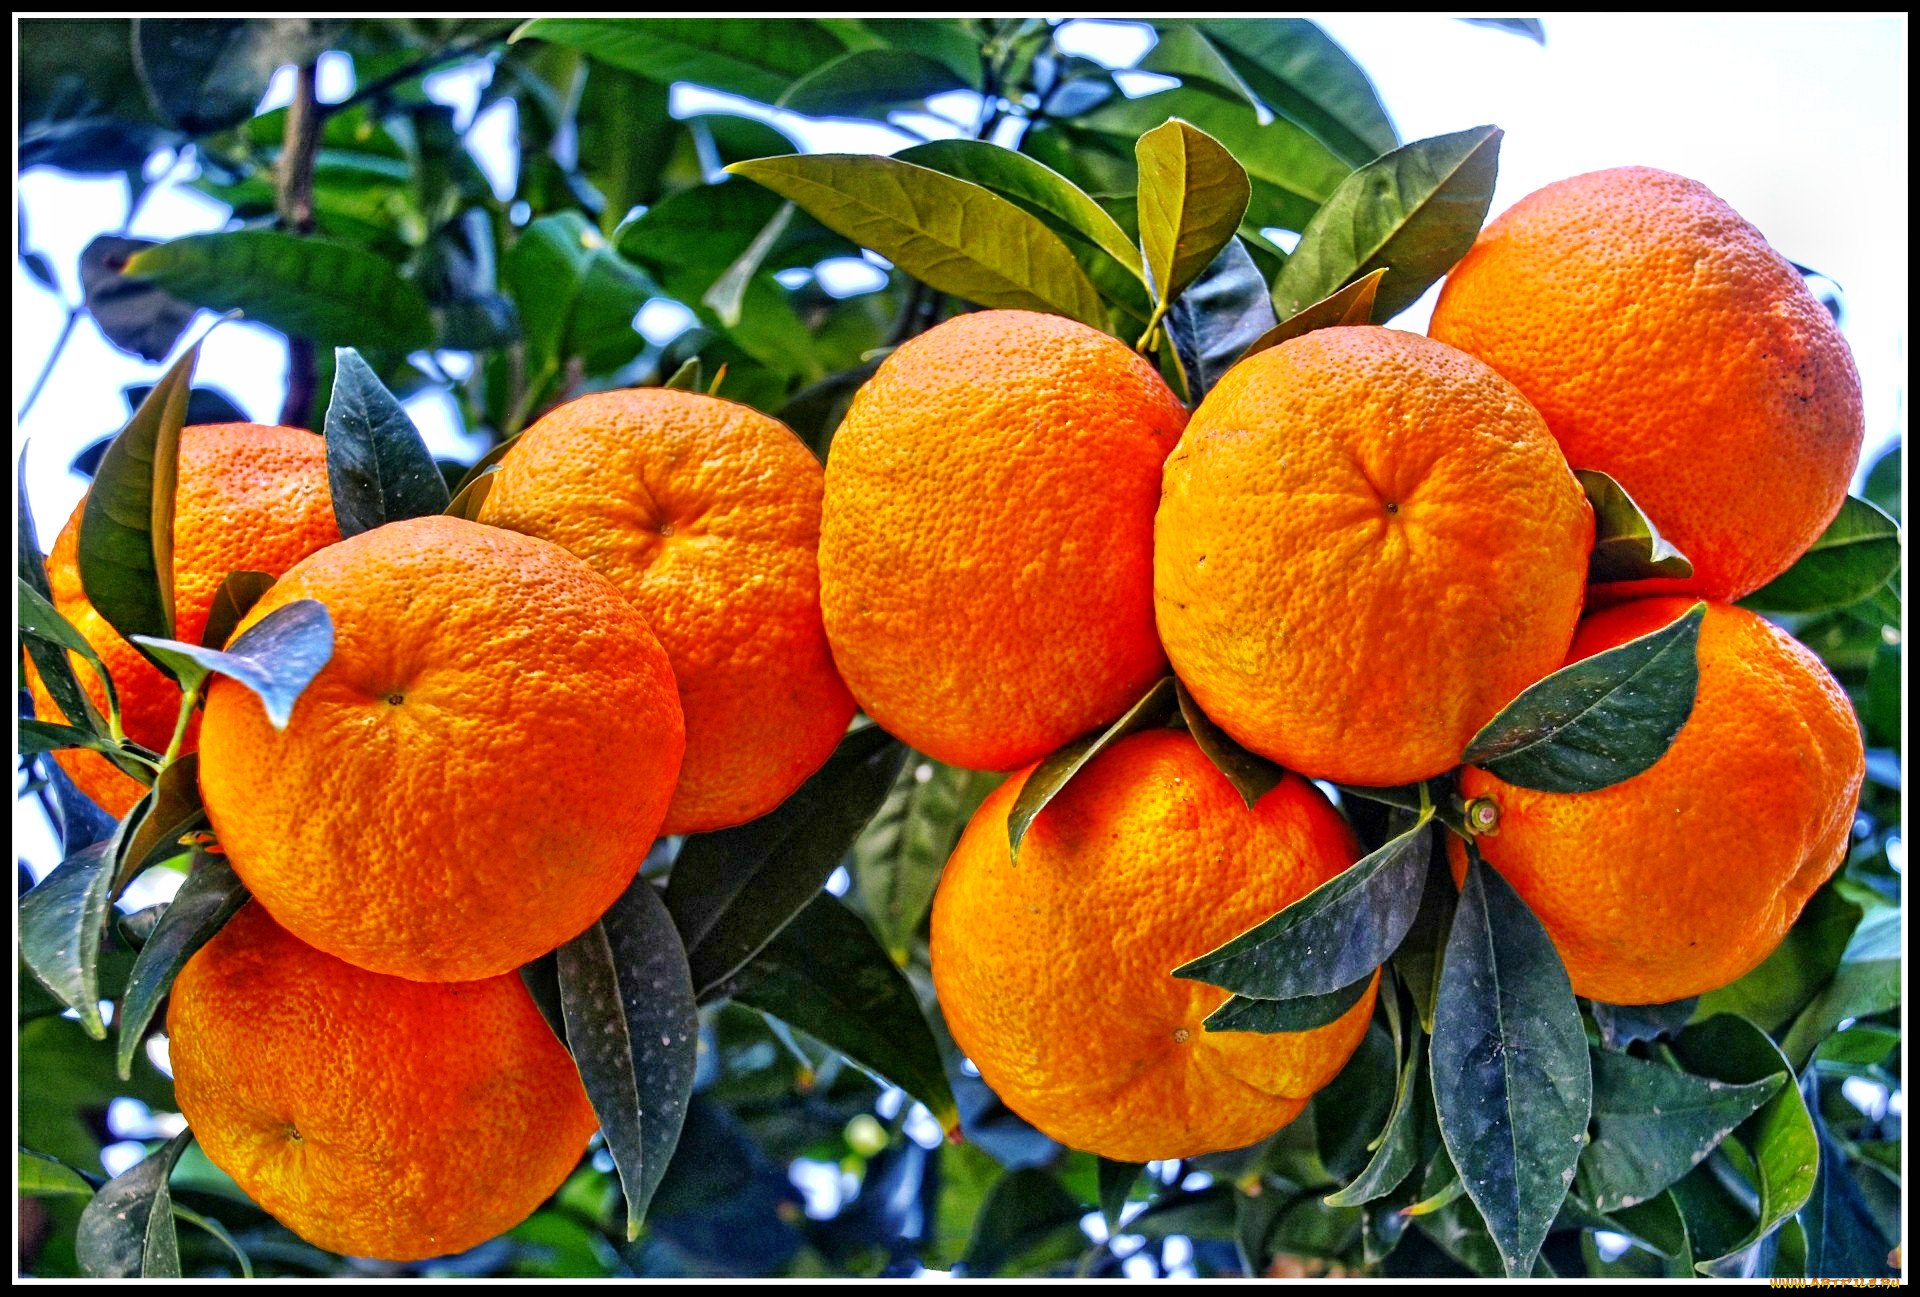 Мандарин род. Мандарин дарахти. Мандарин уншиу дерево. Мандарин уншиу Вариегата. Цитрус мандарин (плоды желто-оранжевые).